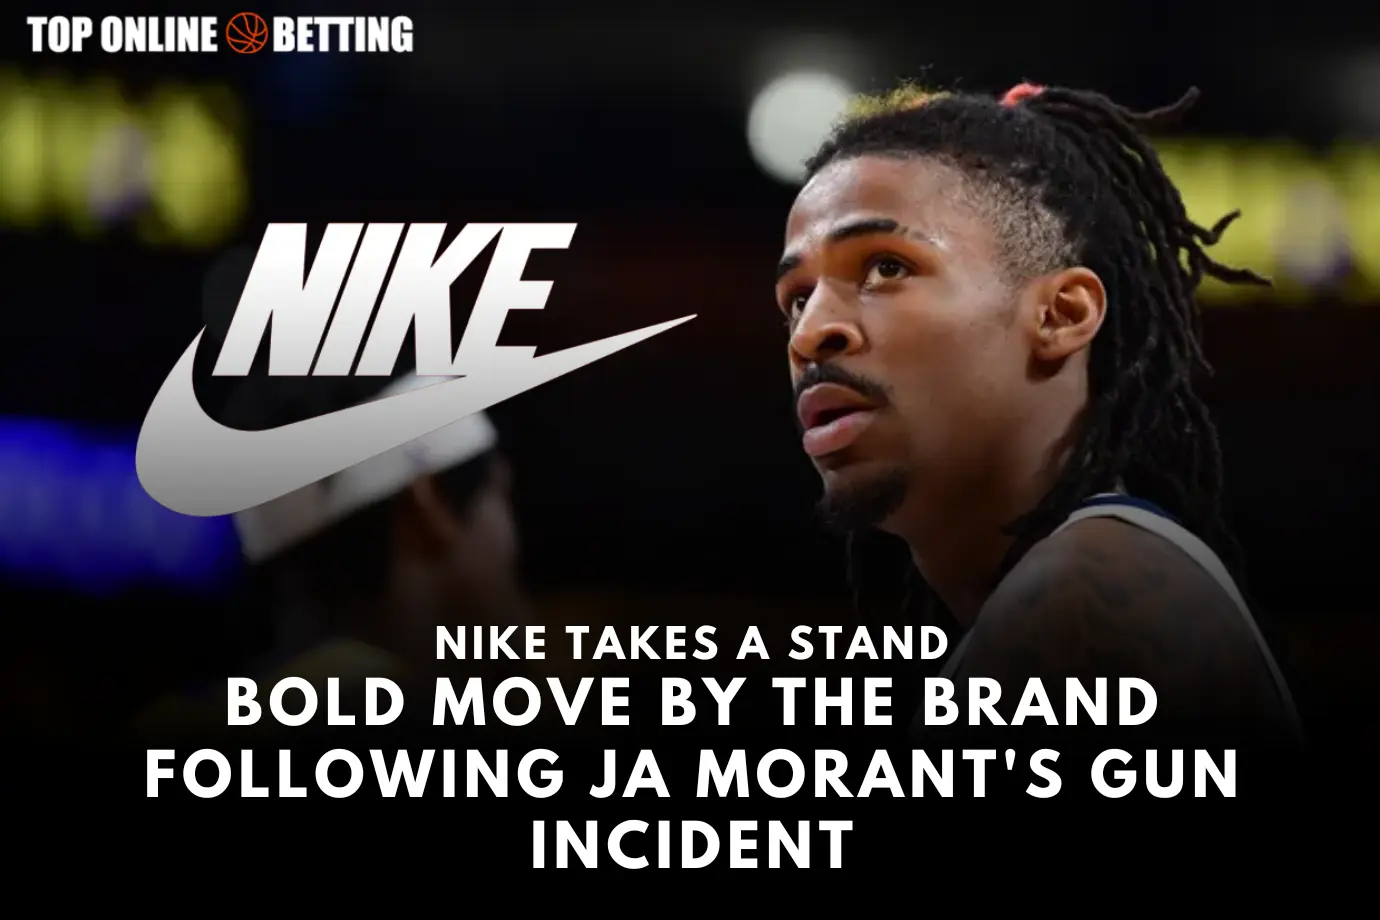 Nike Ambil Sikap: Gerakan Berani dari Merek Menyusul Insiden Senjata Ja Morant